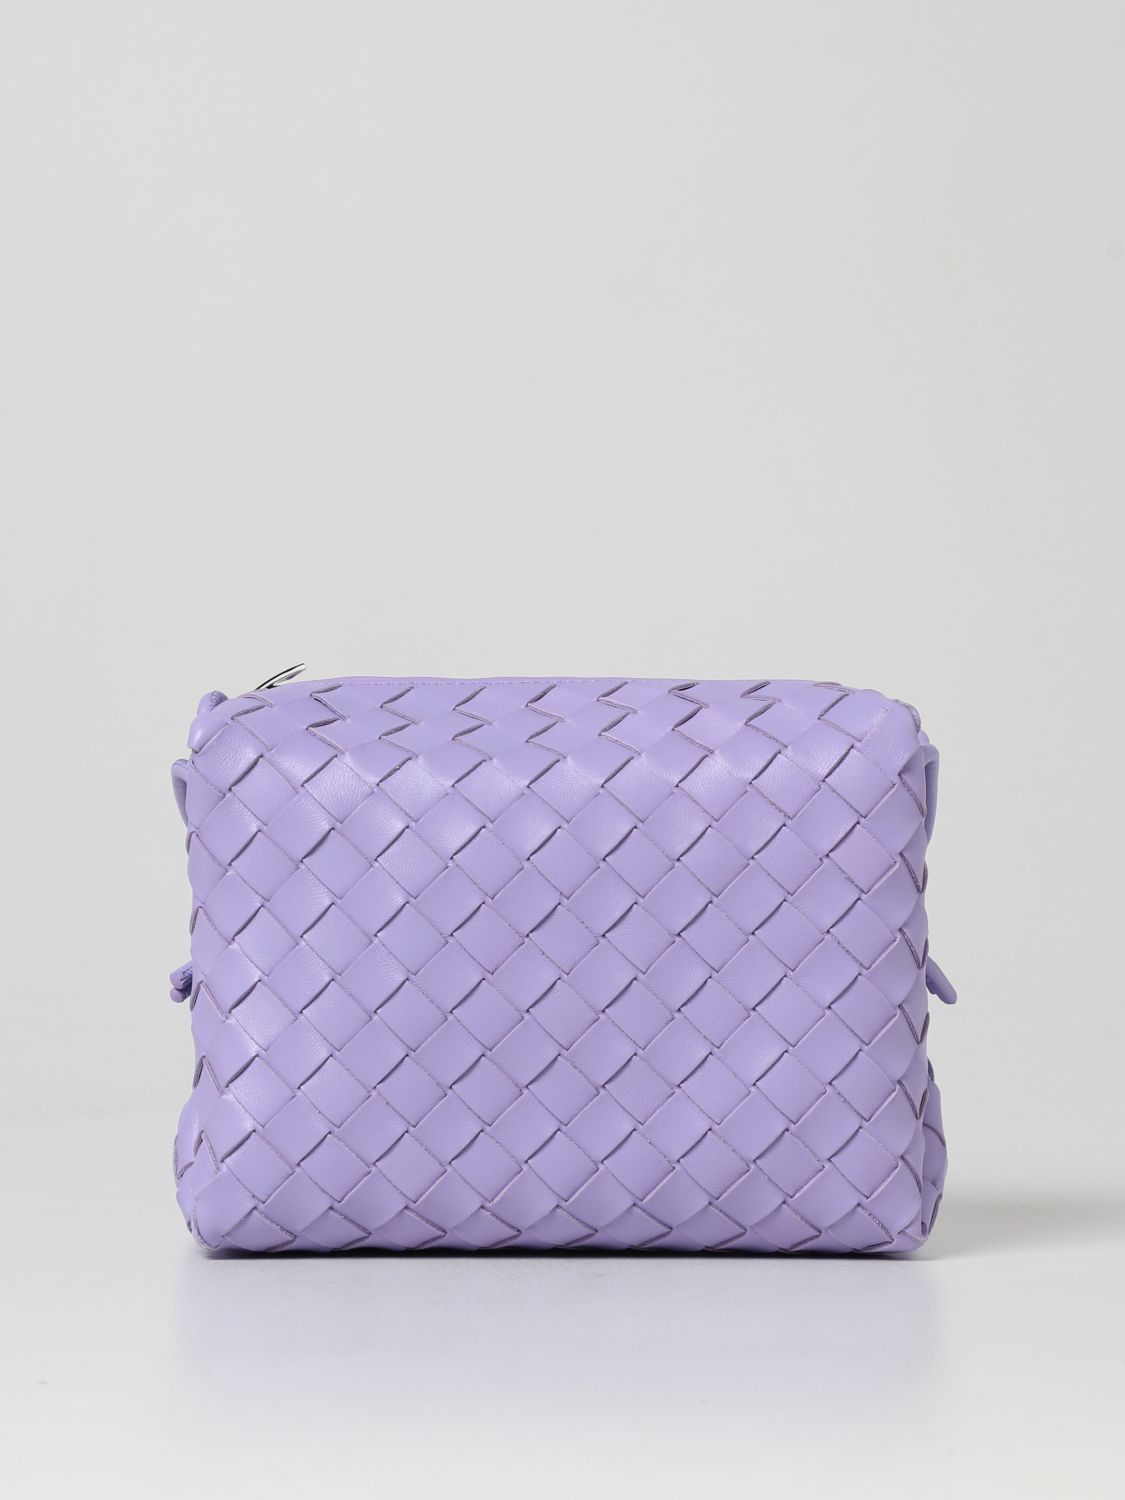 Bottega Veneta Leather Mini Loop Bag Lavender